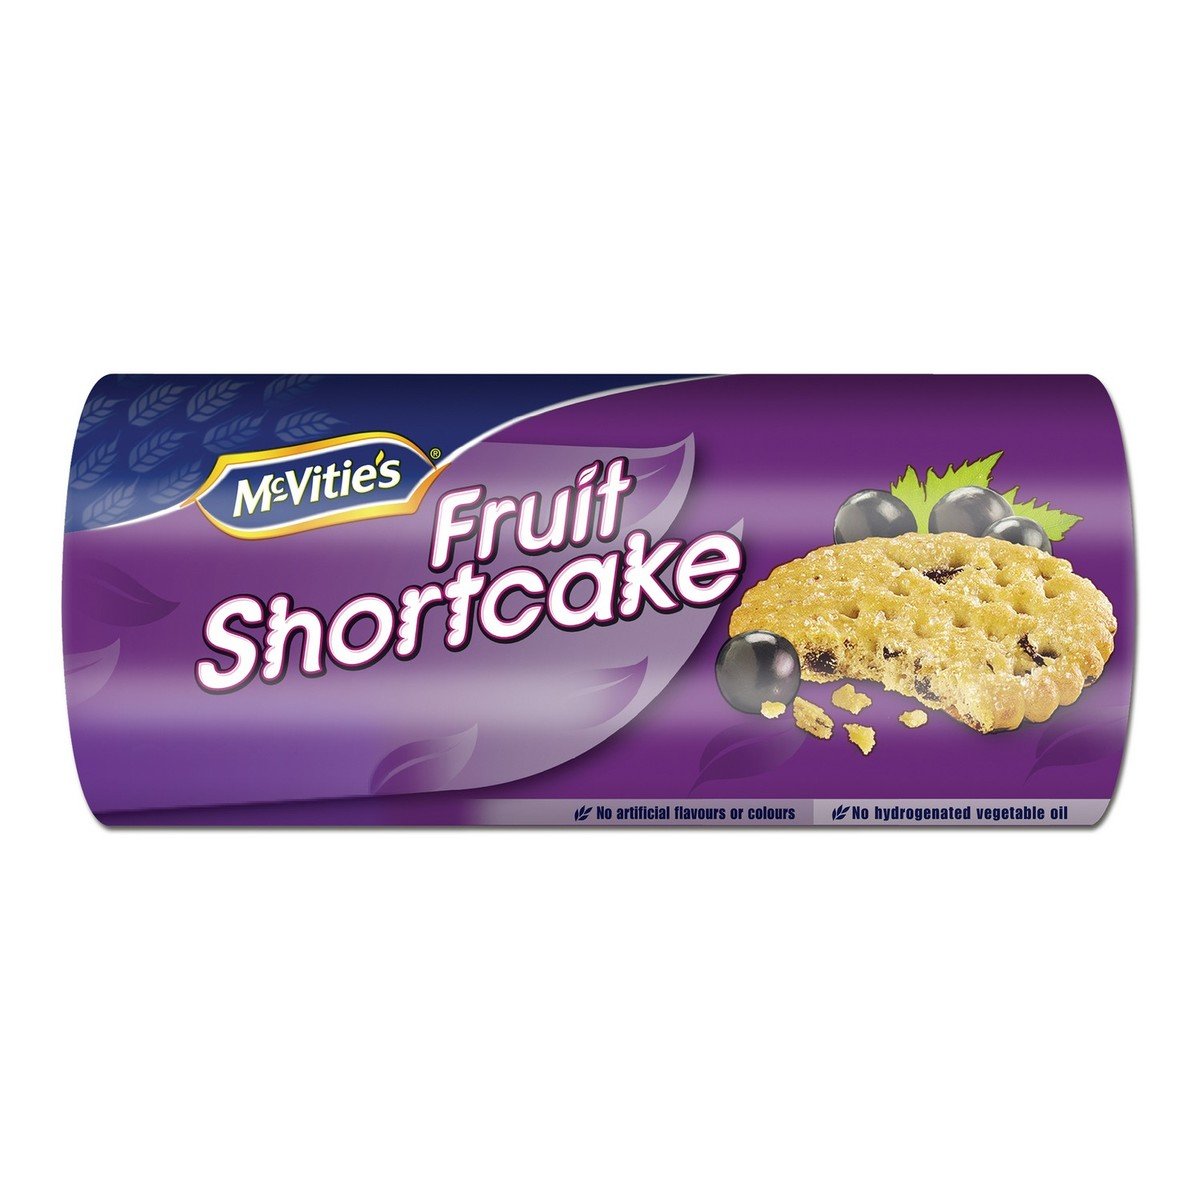 Mcvities Fruit Shortcake 200g Online At Best Price Cookies Lulu Uae 5857